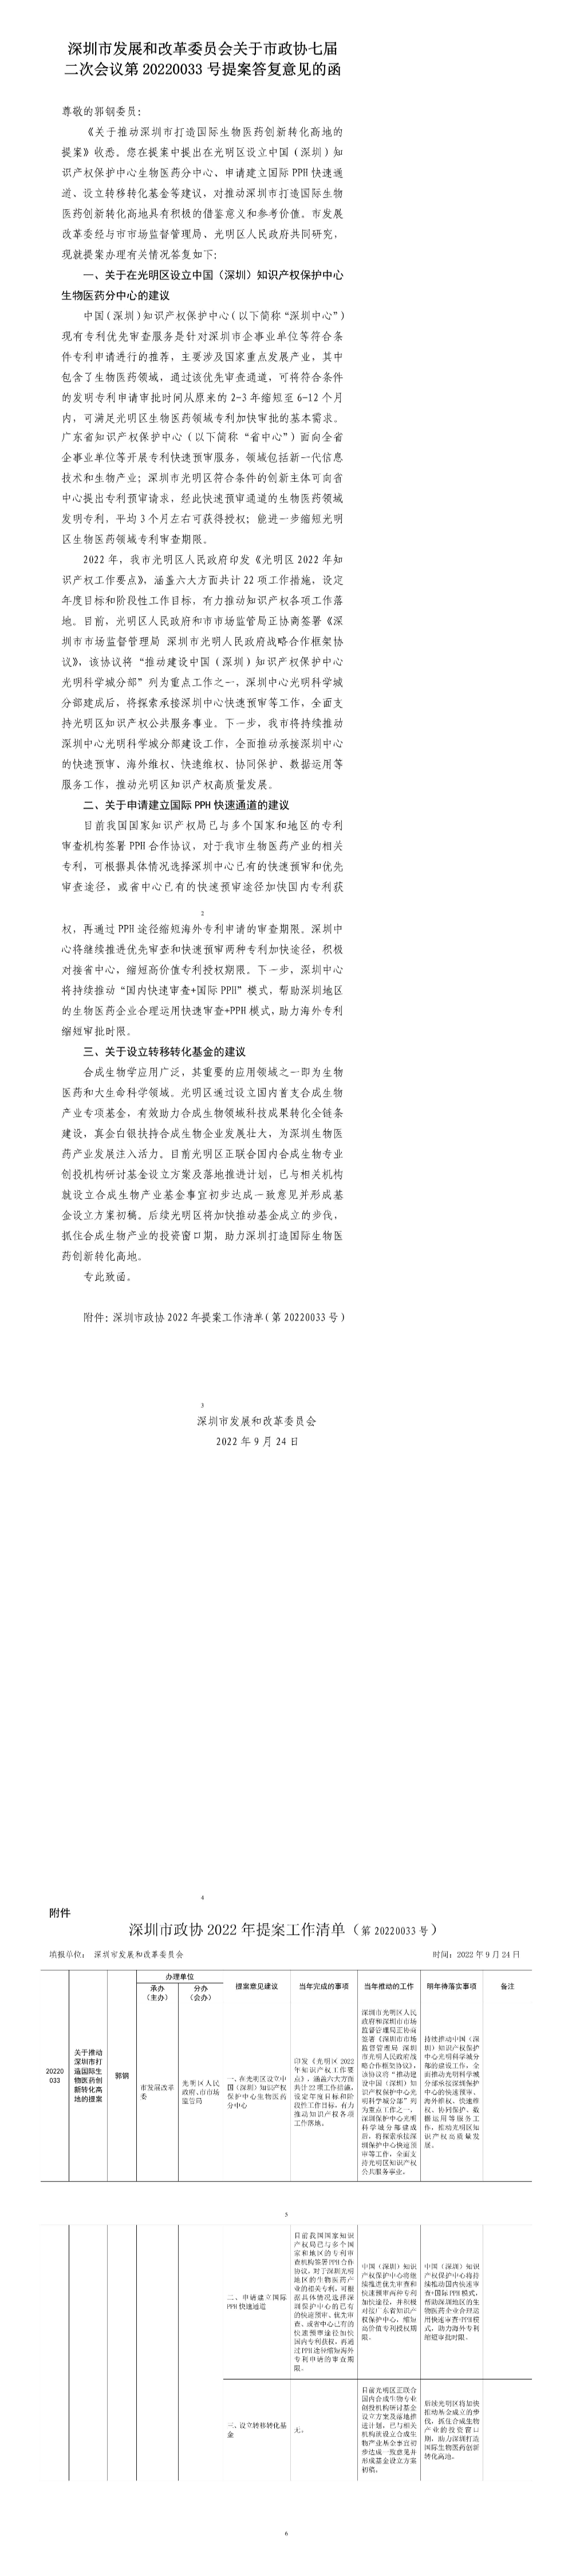 深圳市发展和改革委员会关于市政协七届二次会议第20220033号提案答复意见的函.jpg